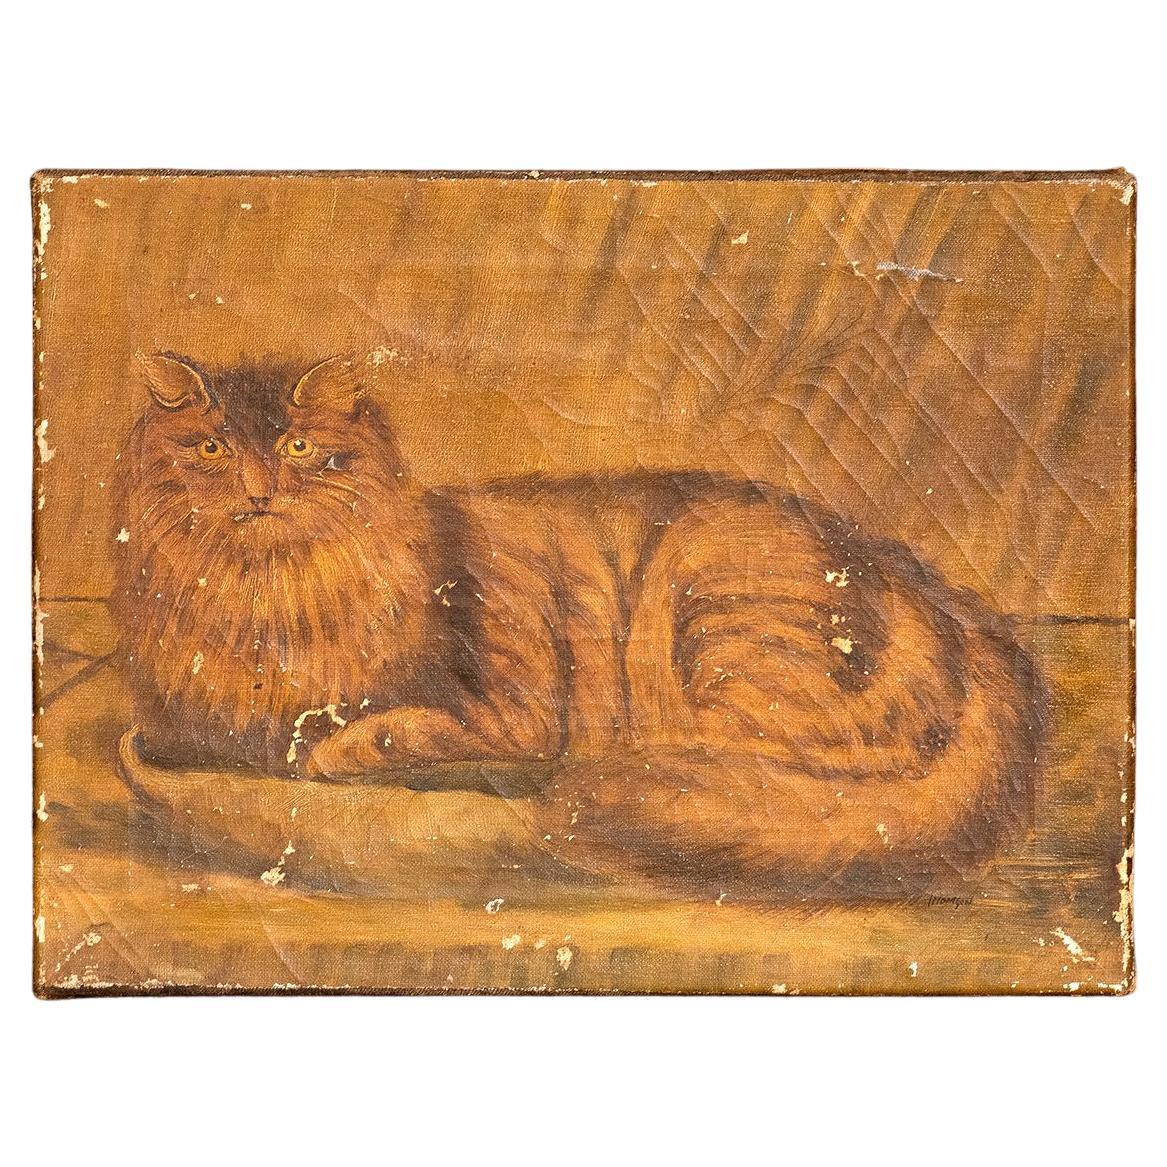 Naive Volkskunststudie einer Katze, Öl auf Leinwand, antikes Gemälde des 19. Jahrhunderts